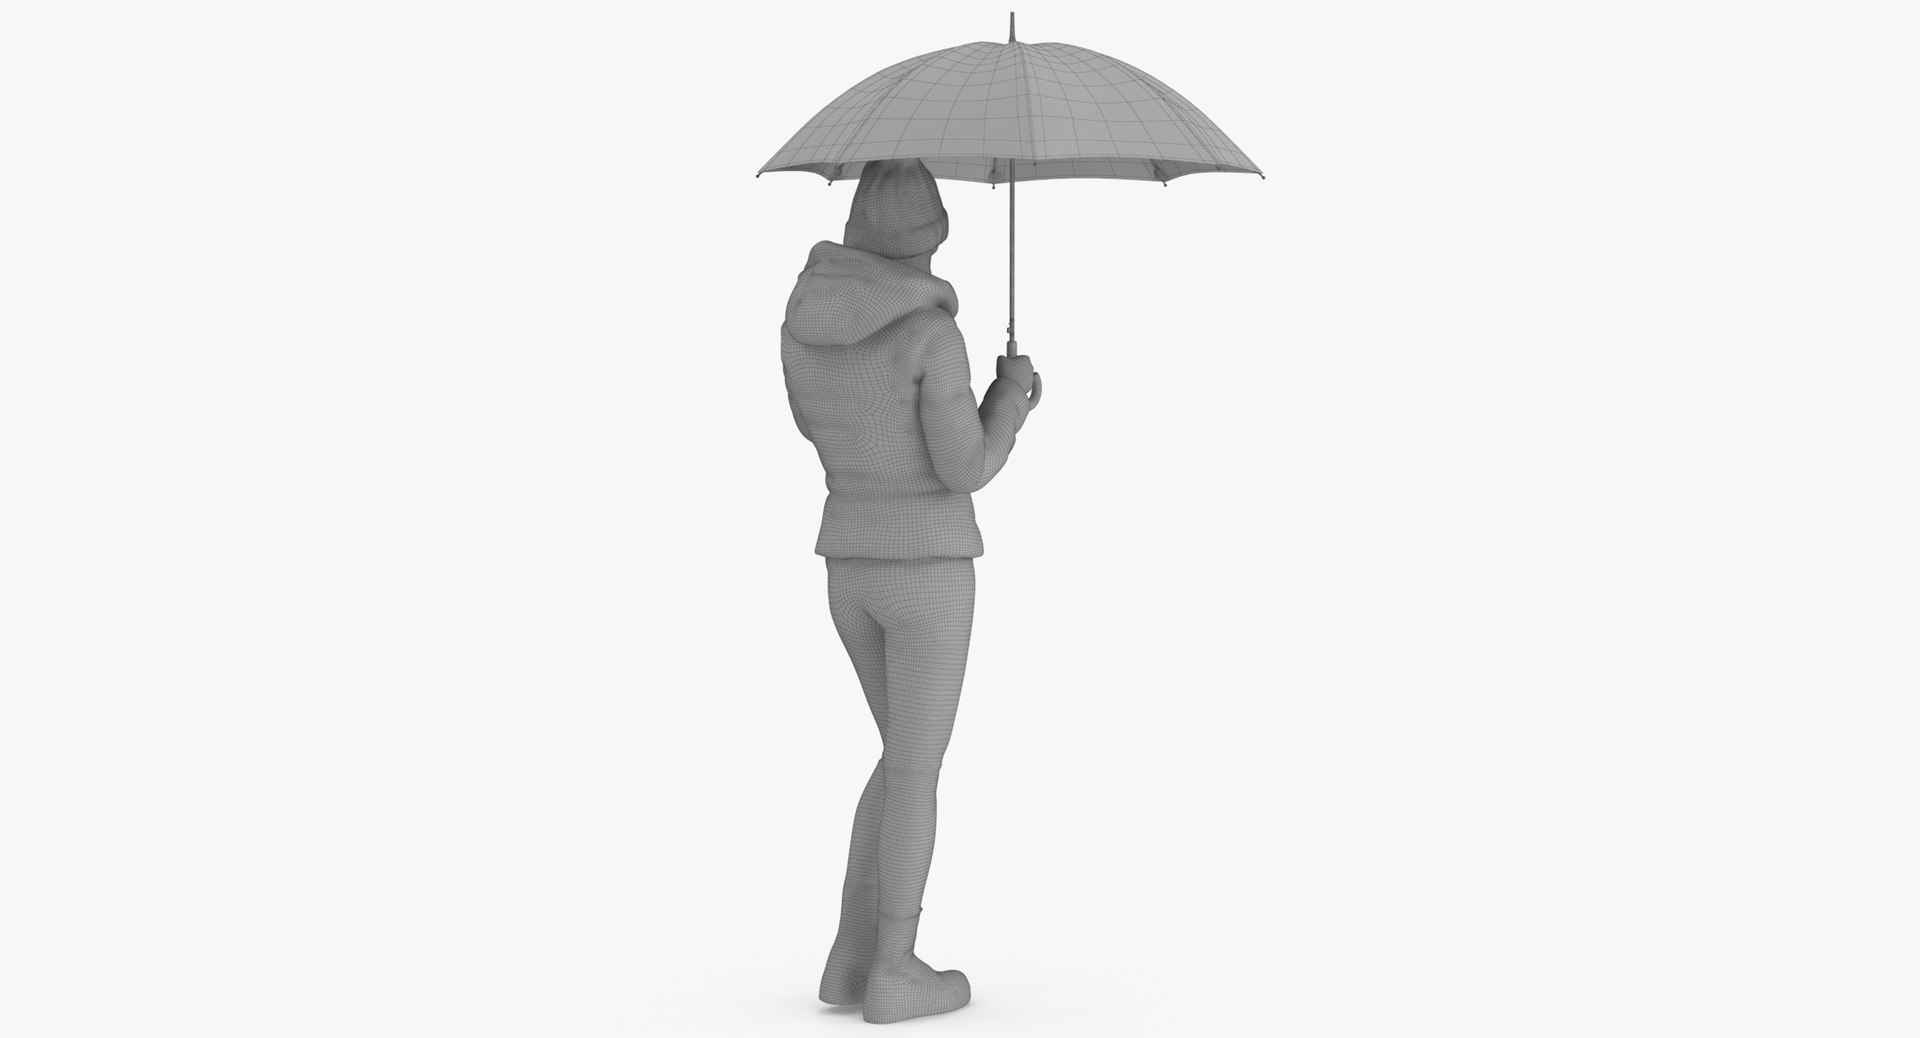 Gothic Pose Umbrella - Free photo on Pixabay - Pixabay